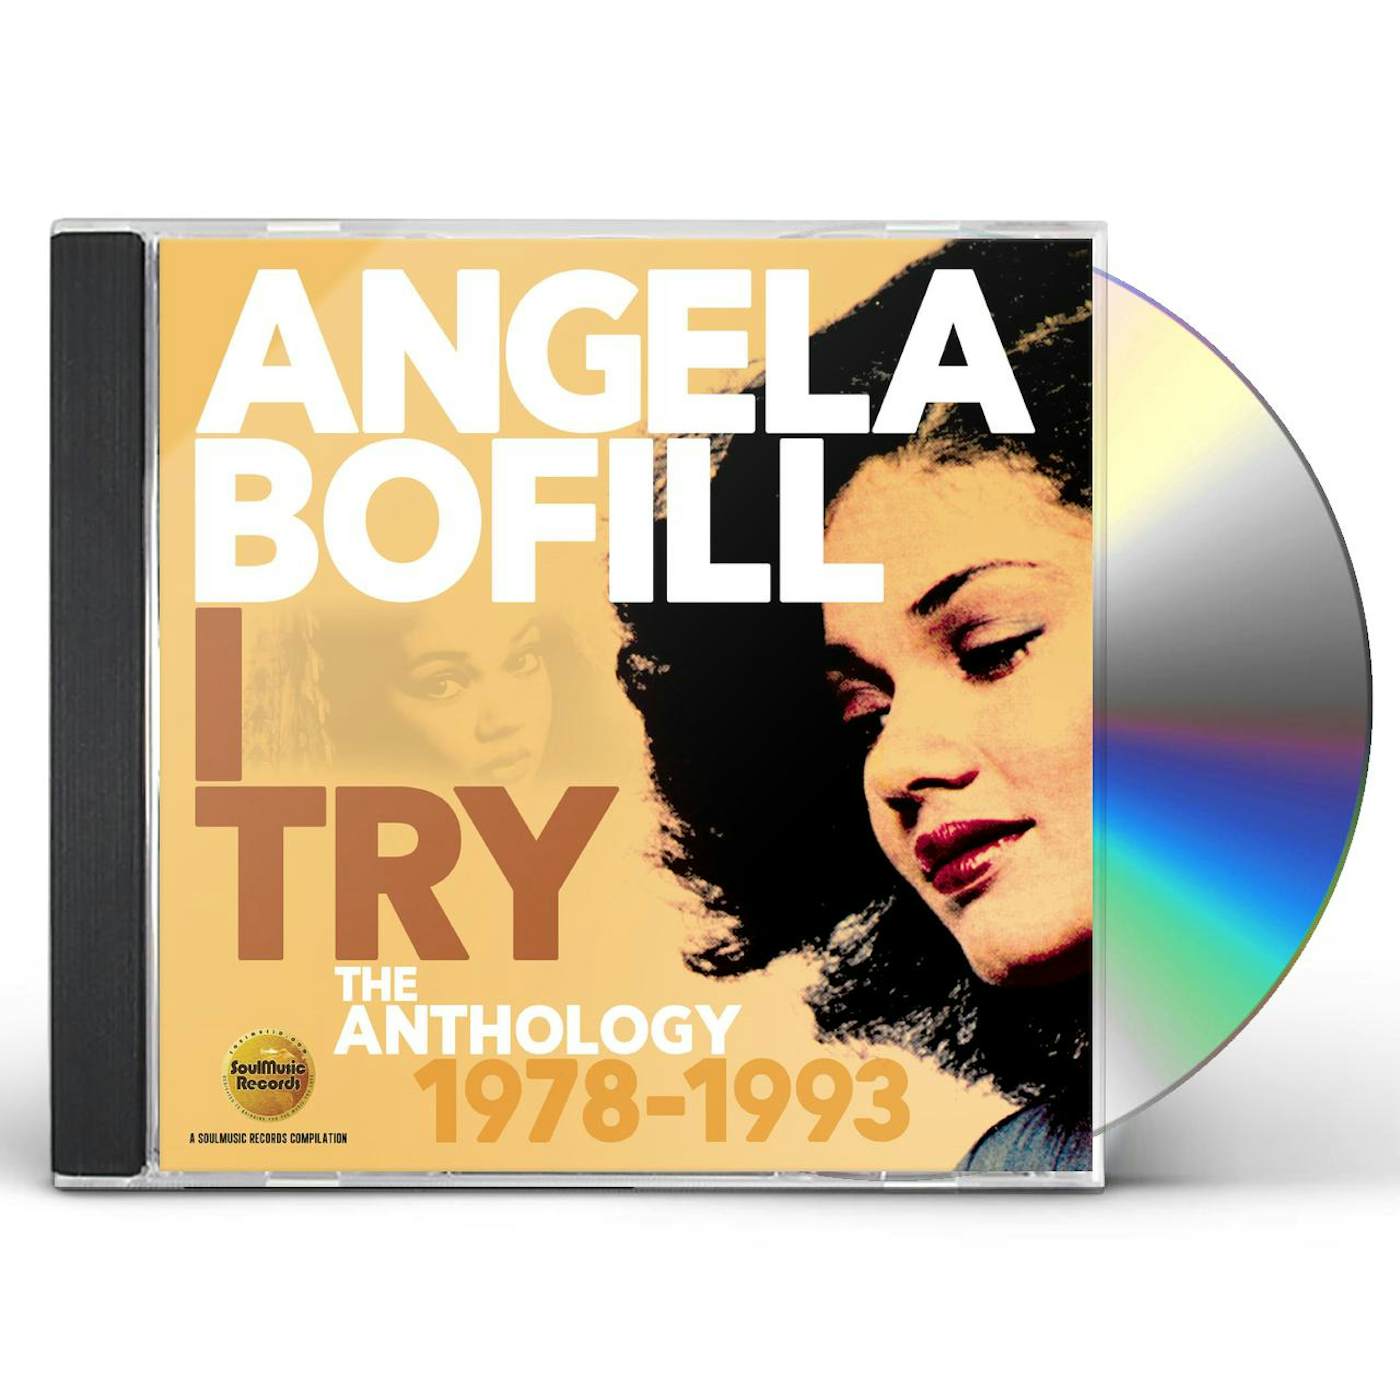 Angela Bofill I TRY: ANTHOLOGY 1978-1993 CD